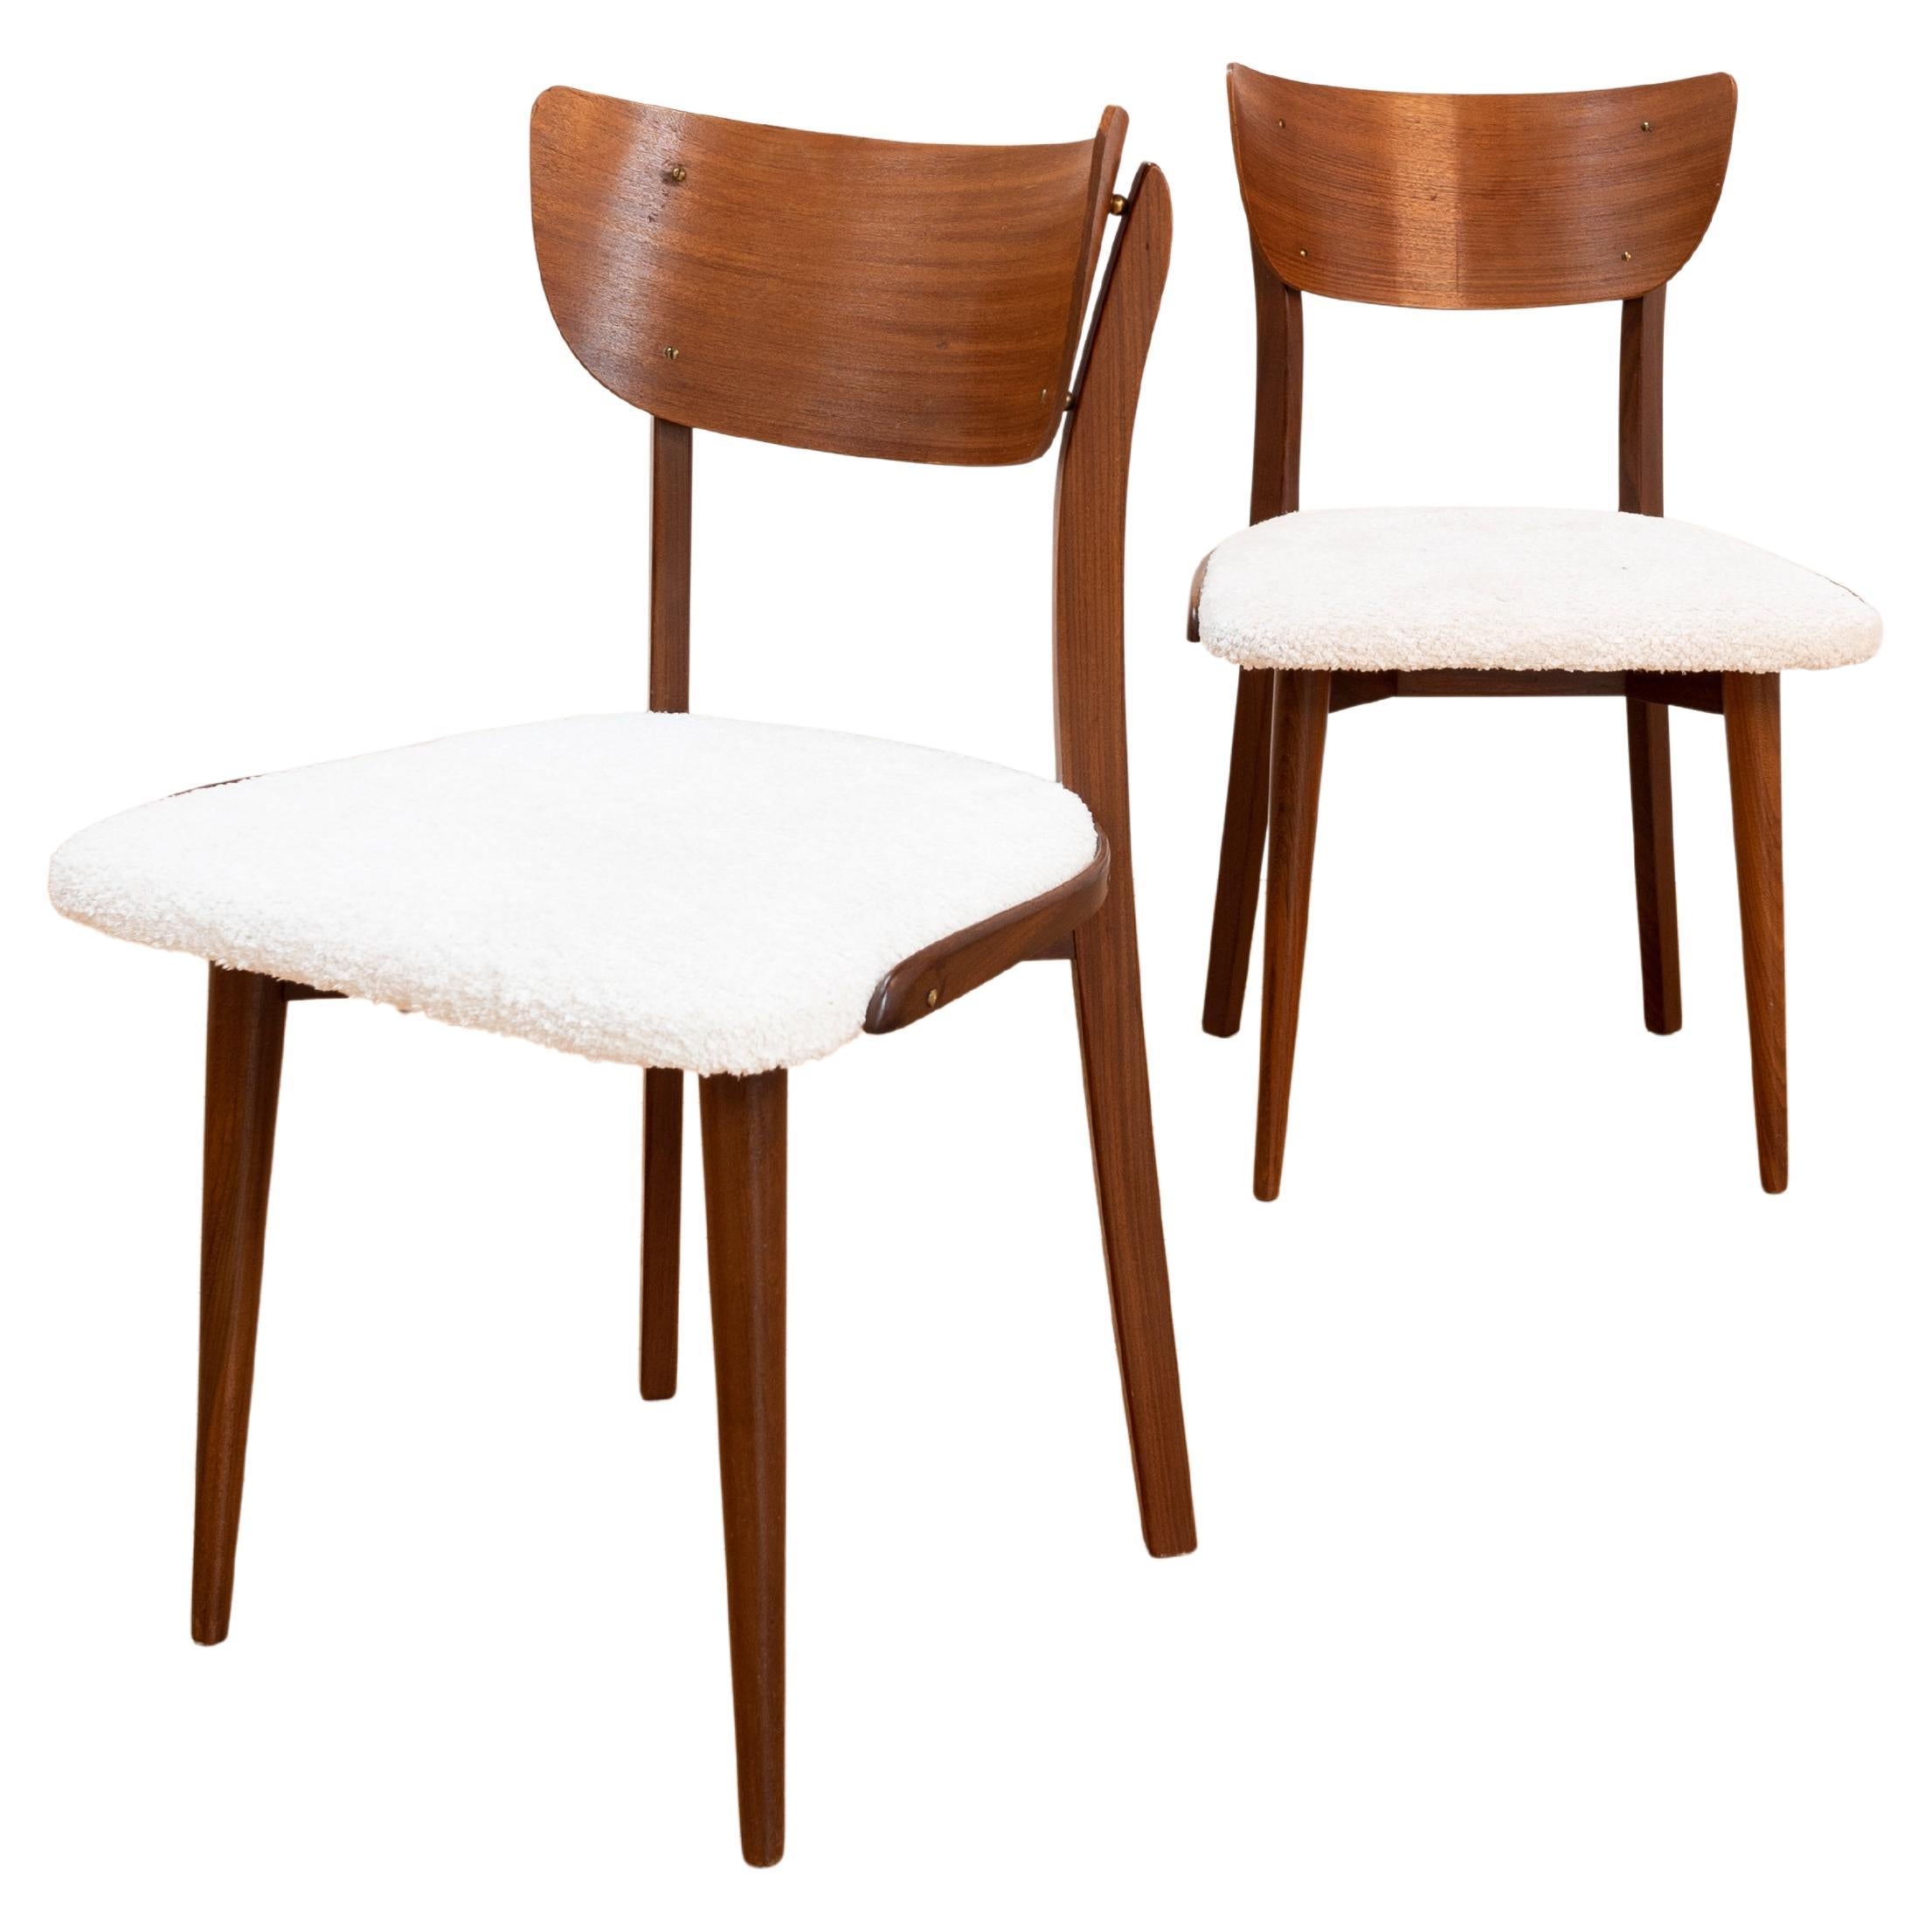 Satz von 2 Stühlen, dänisches Design, mit neuer Polsterung